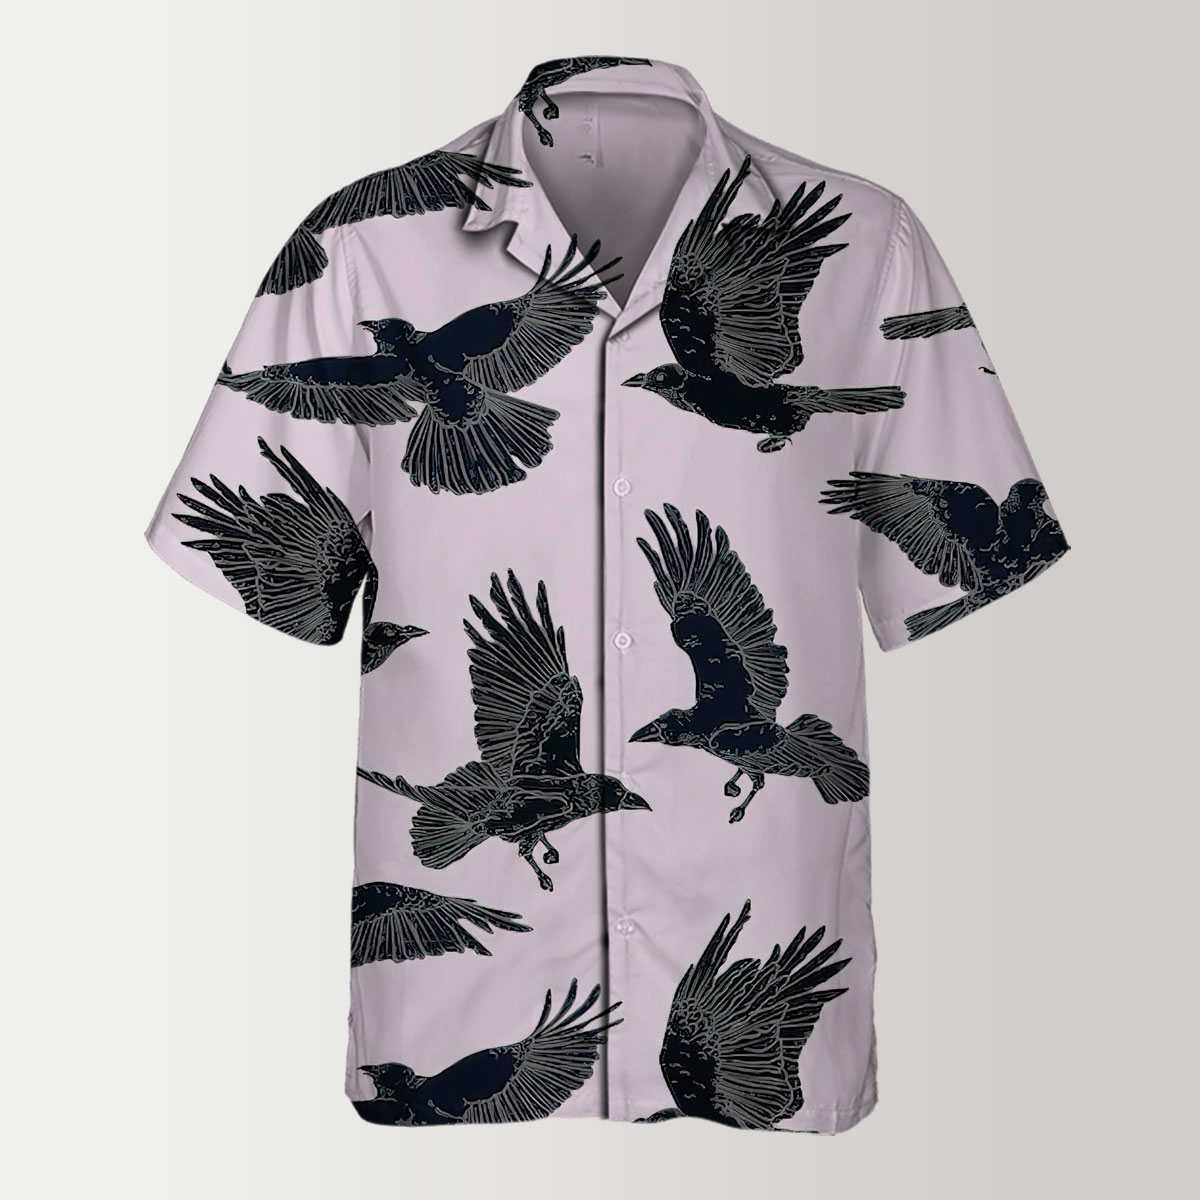 Flying Raven Art Hawaiian Shirt